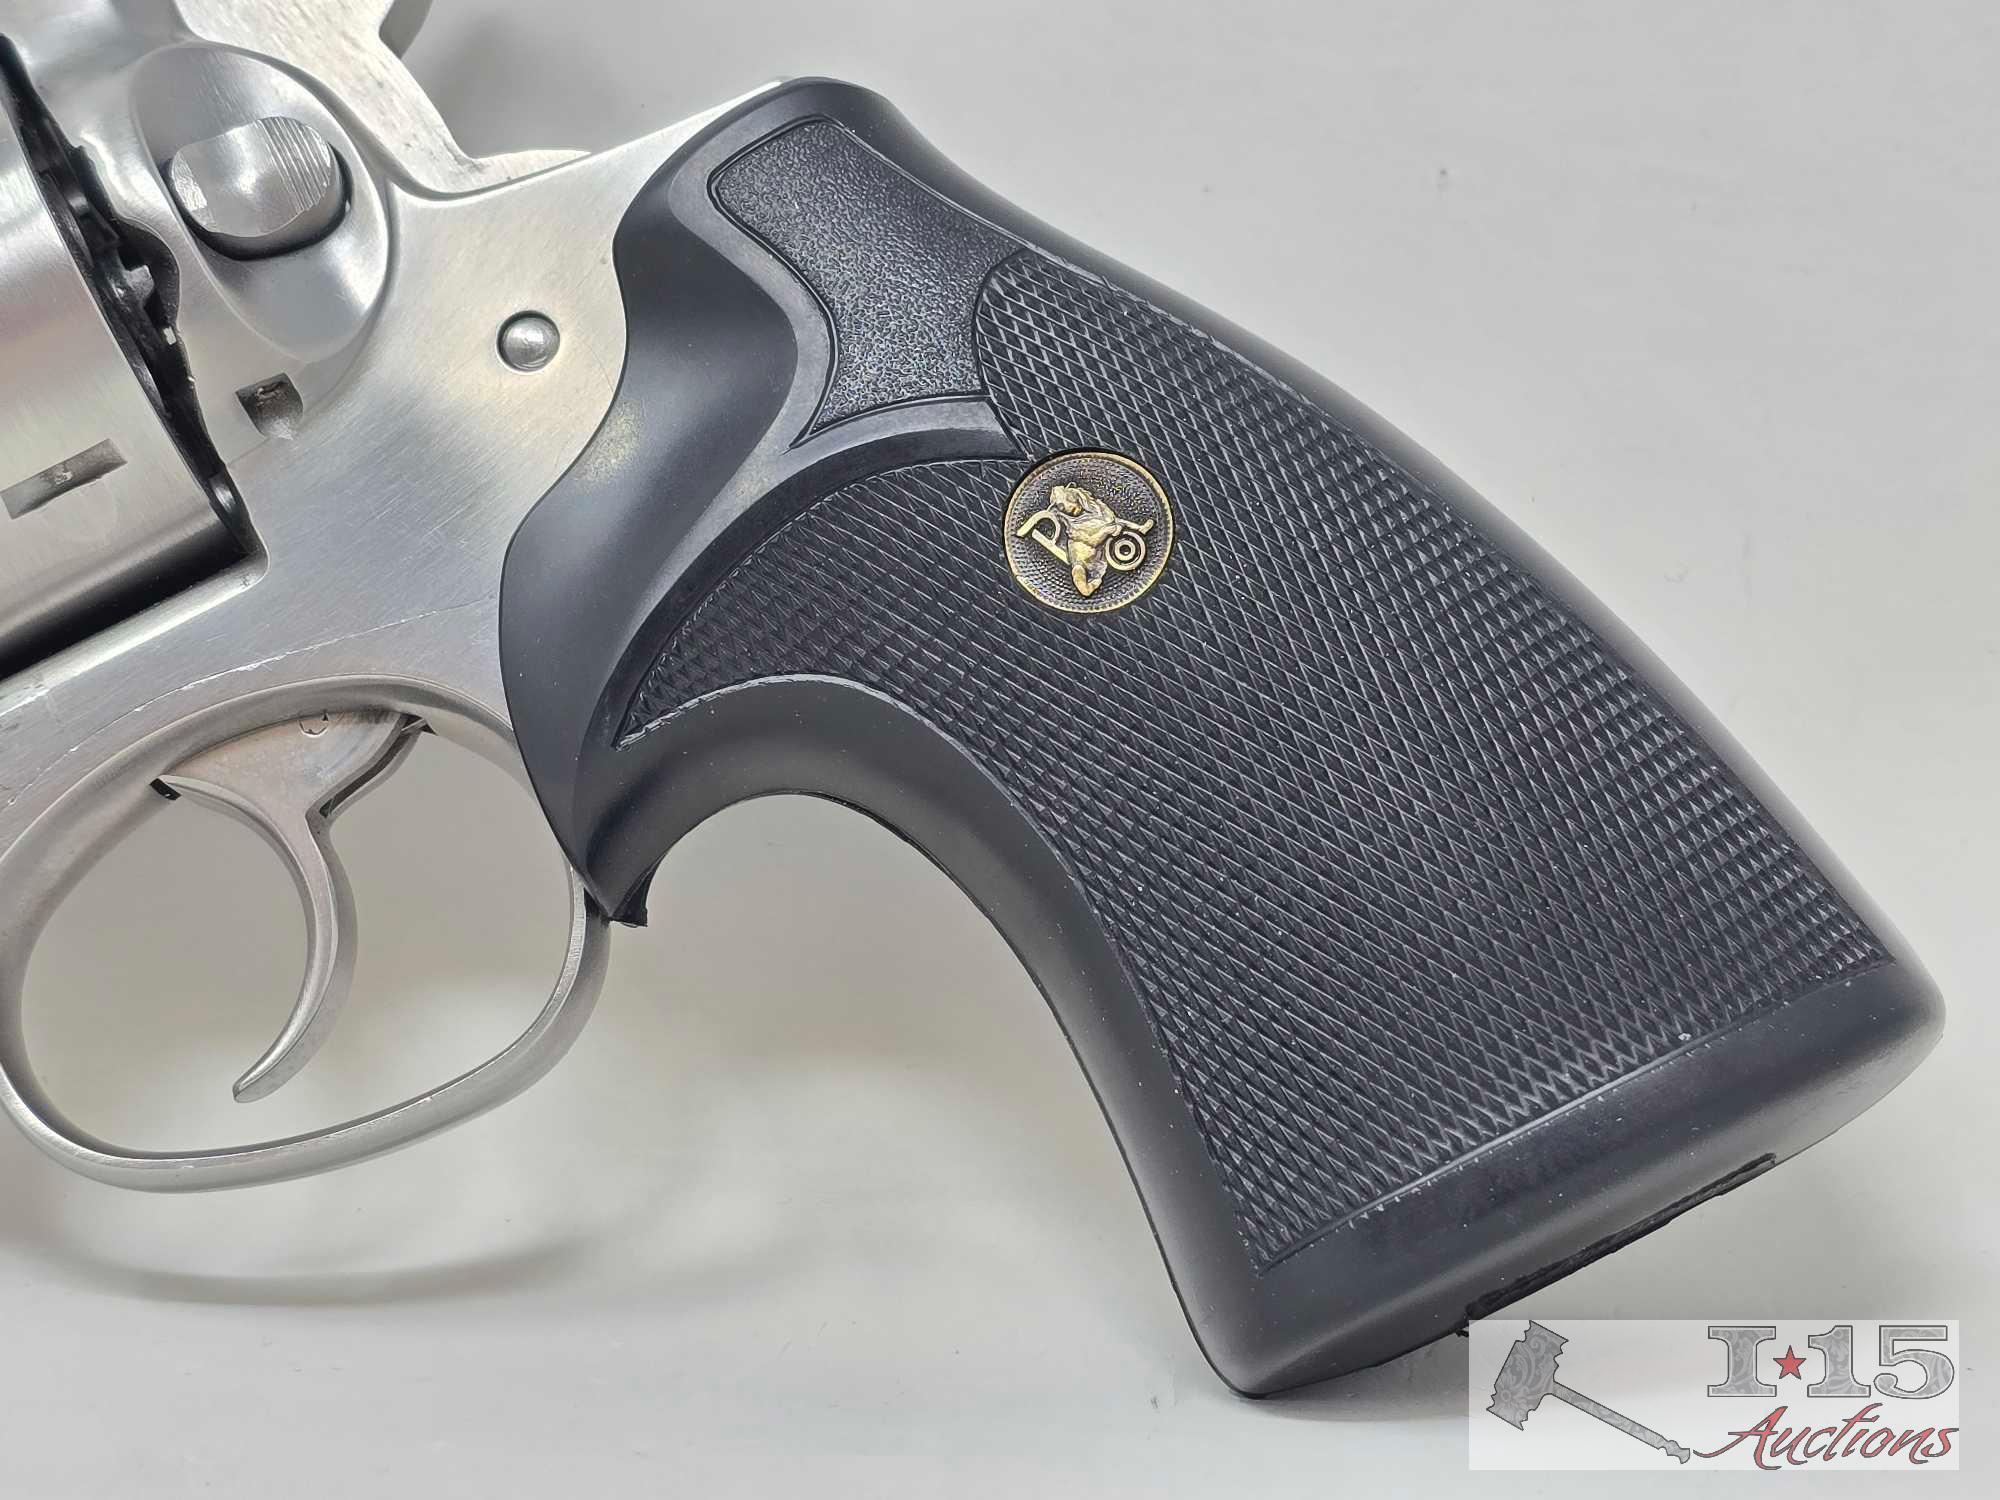 Ruger Redhawk .44 Magnum Revolver